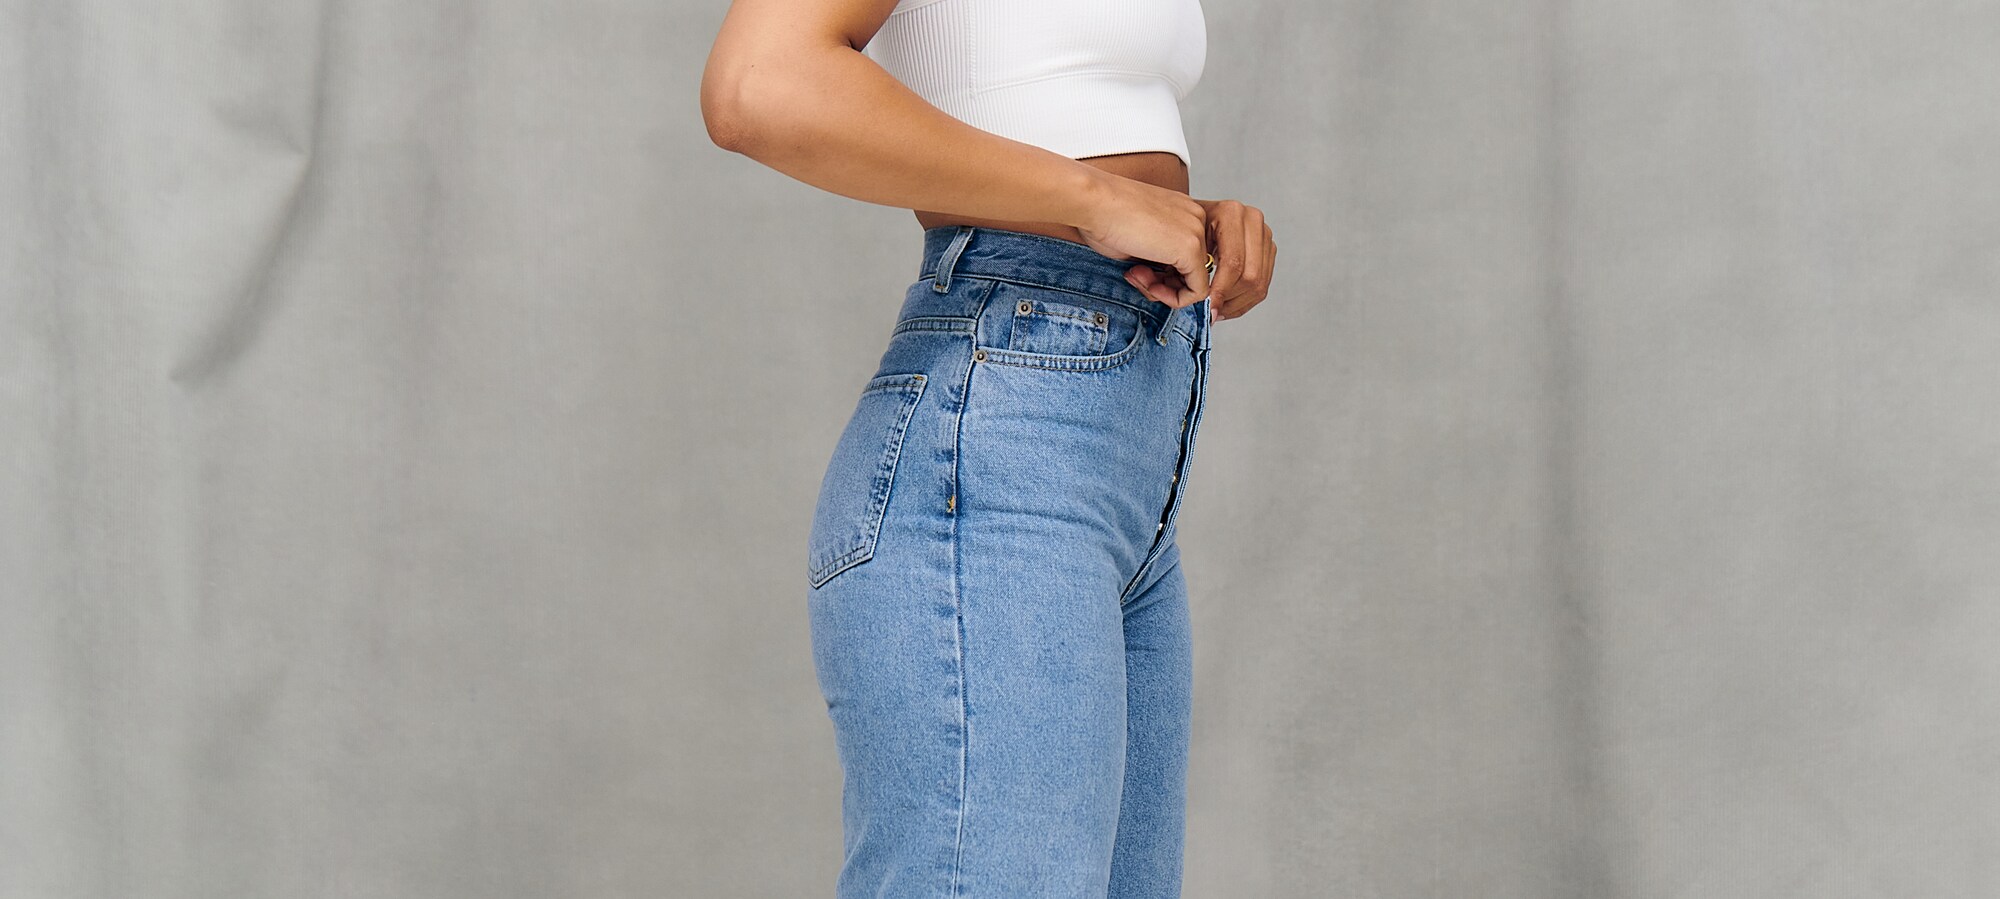 Consejos, trucos y tablas de tallas para tomar tus medidas Cómo encontrar tu talla perfecta de jeans